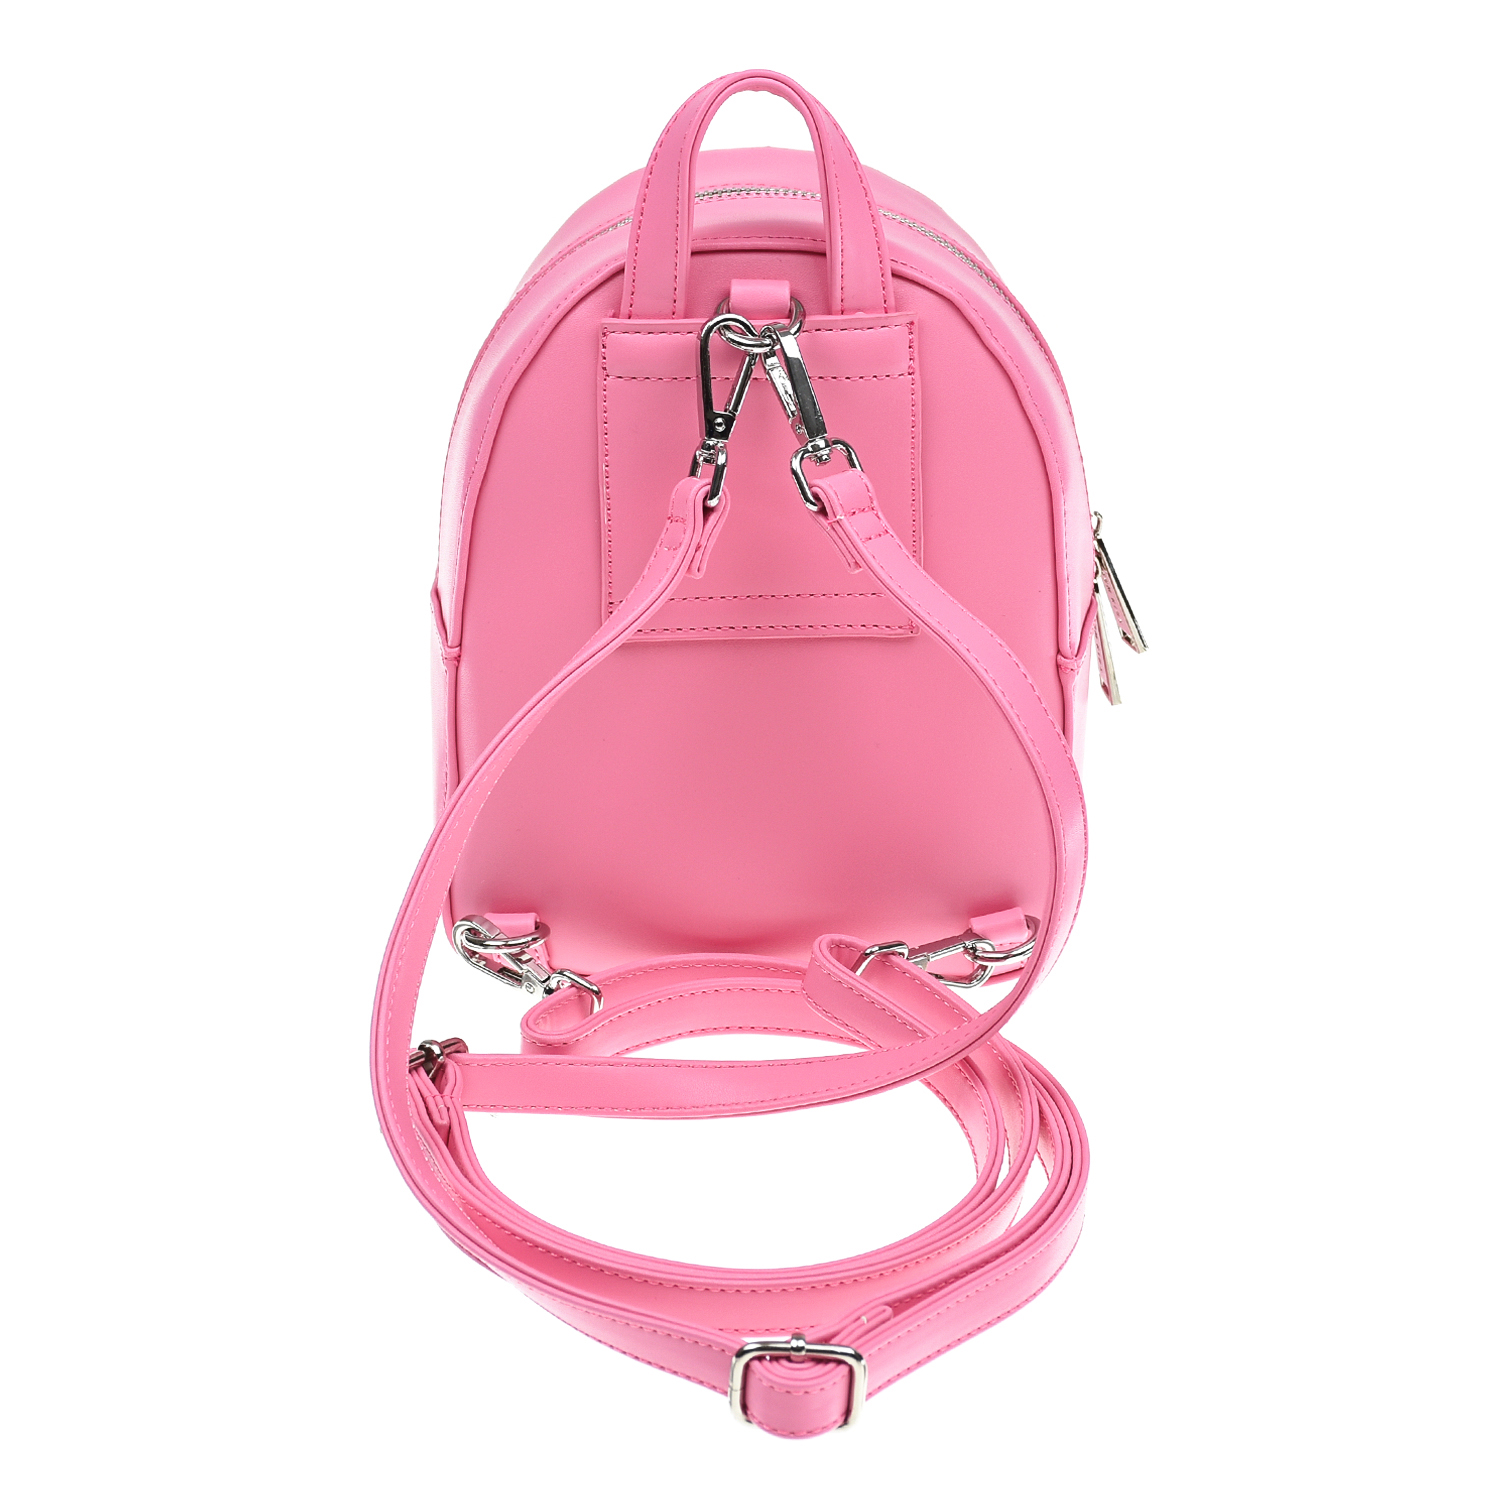 Розовый рюкзак с белым логотипом MSGM детский, размер unica - фото 3